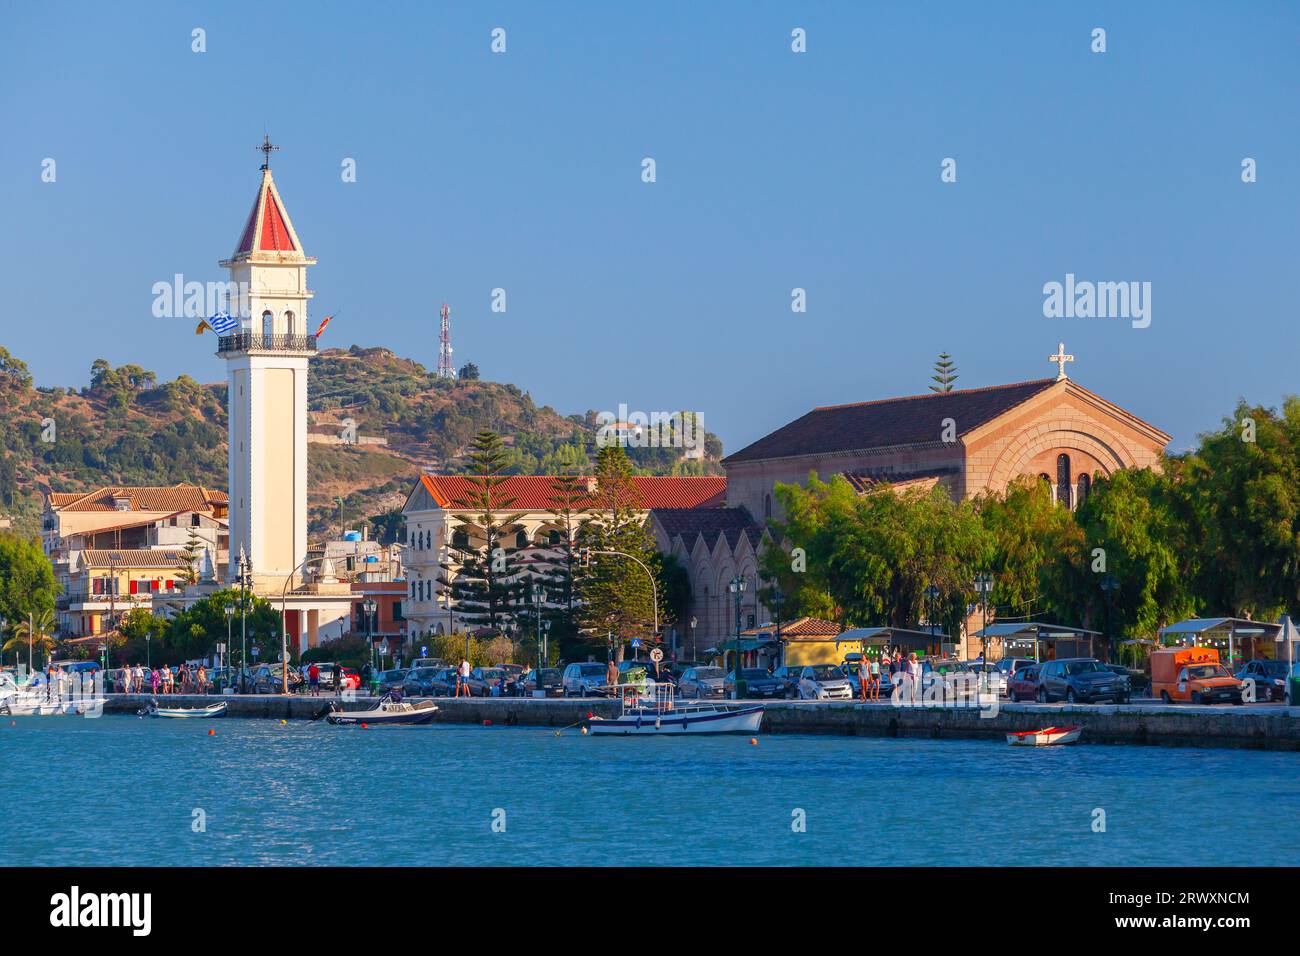 Zakynthos, Griechenland - 14. August 2016: Blick auf den Hafen von Zante, gewöhnliche Menschen und Autos befinden sich auf der Küstenstraße Stockfoto